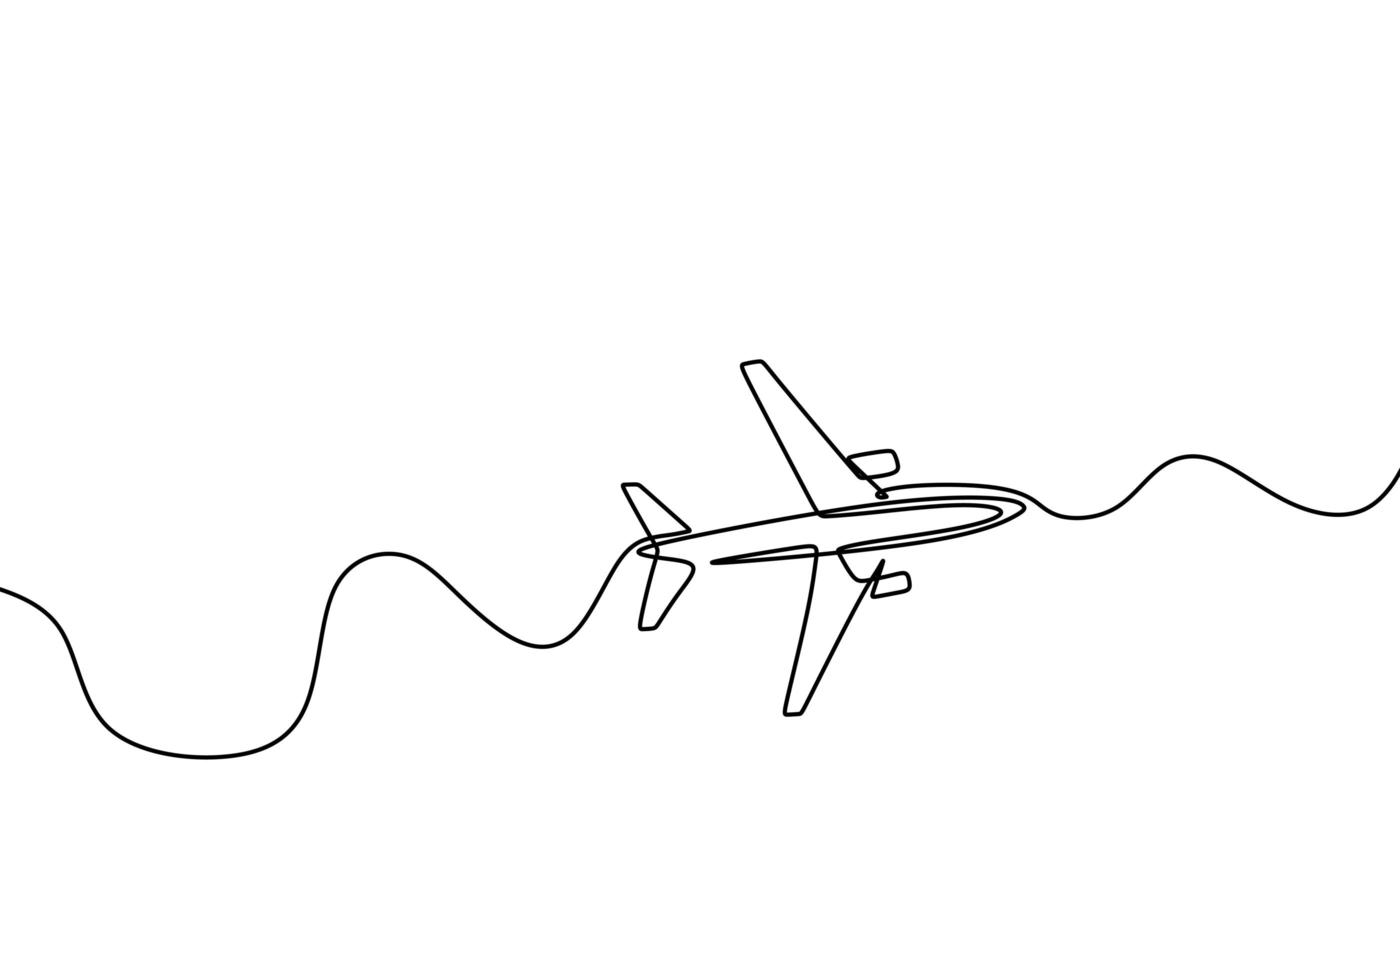 aeroplano continuo un disegno a tratteggio, design minimalista illustrazione vettoriale isolato su sfondo bianco.